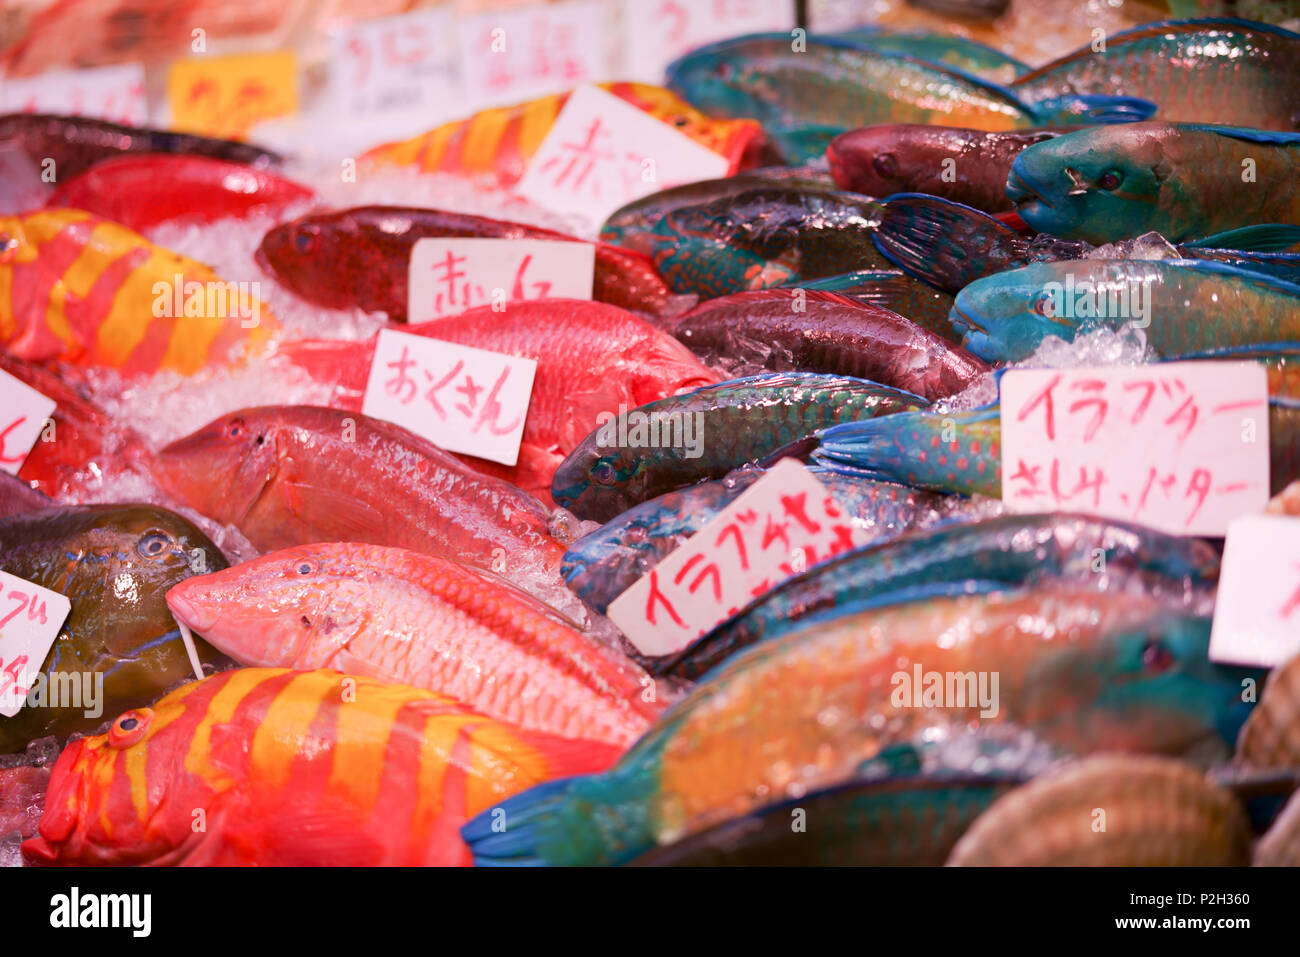 Mercado de alimentos, Prefectura de Okinawa, Japón Foto de stock